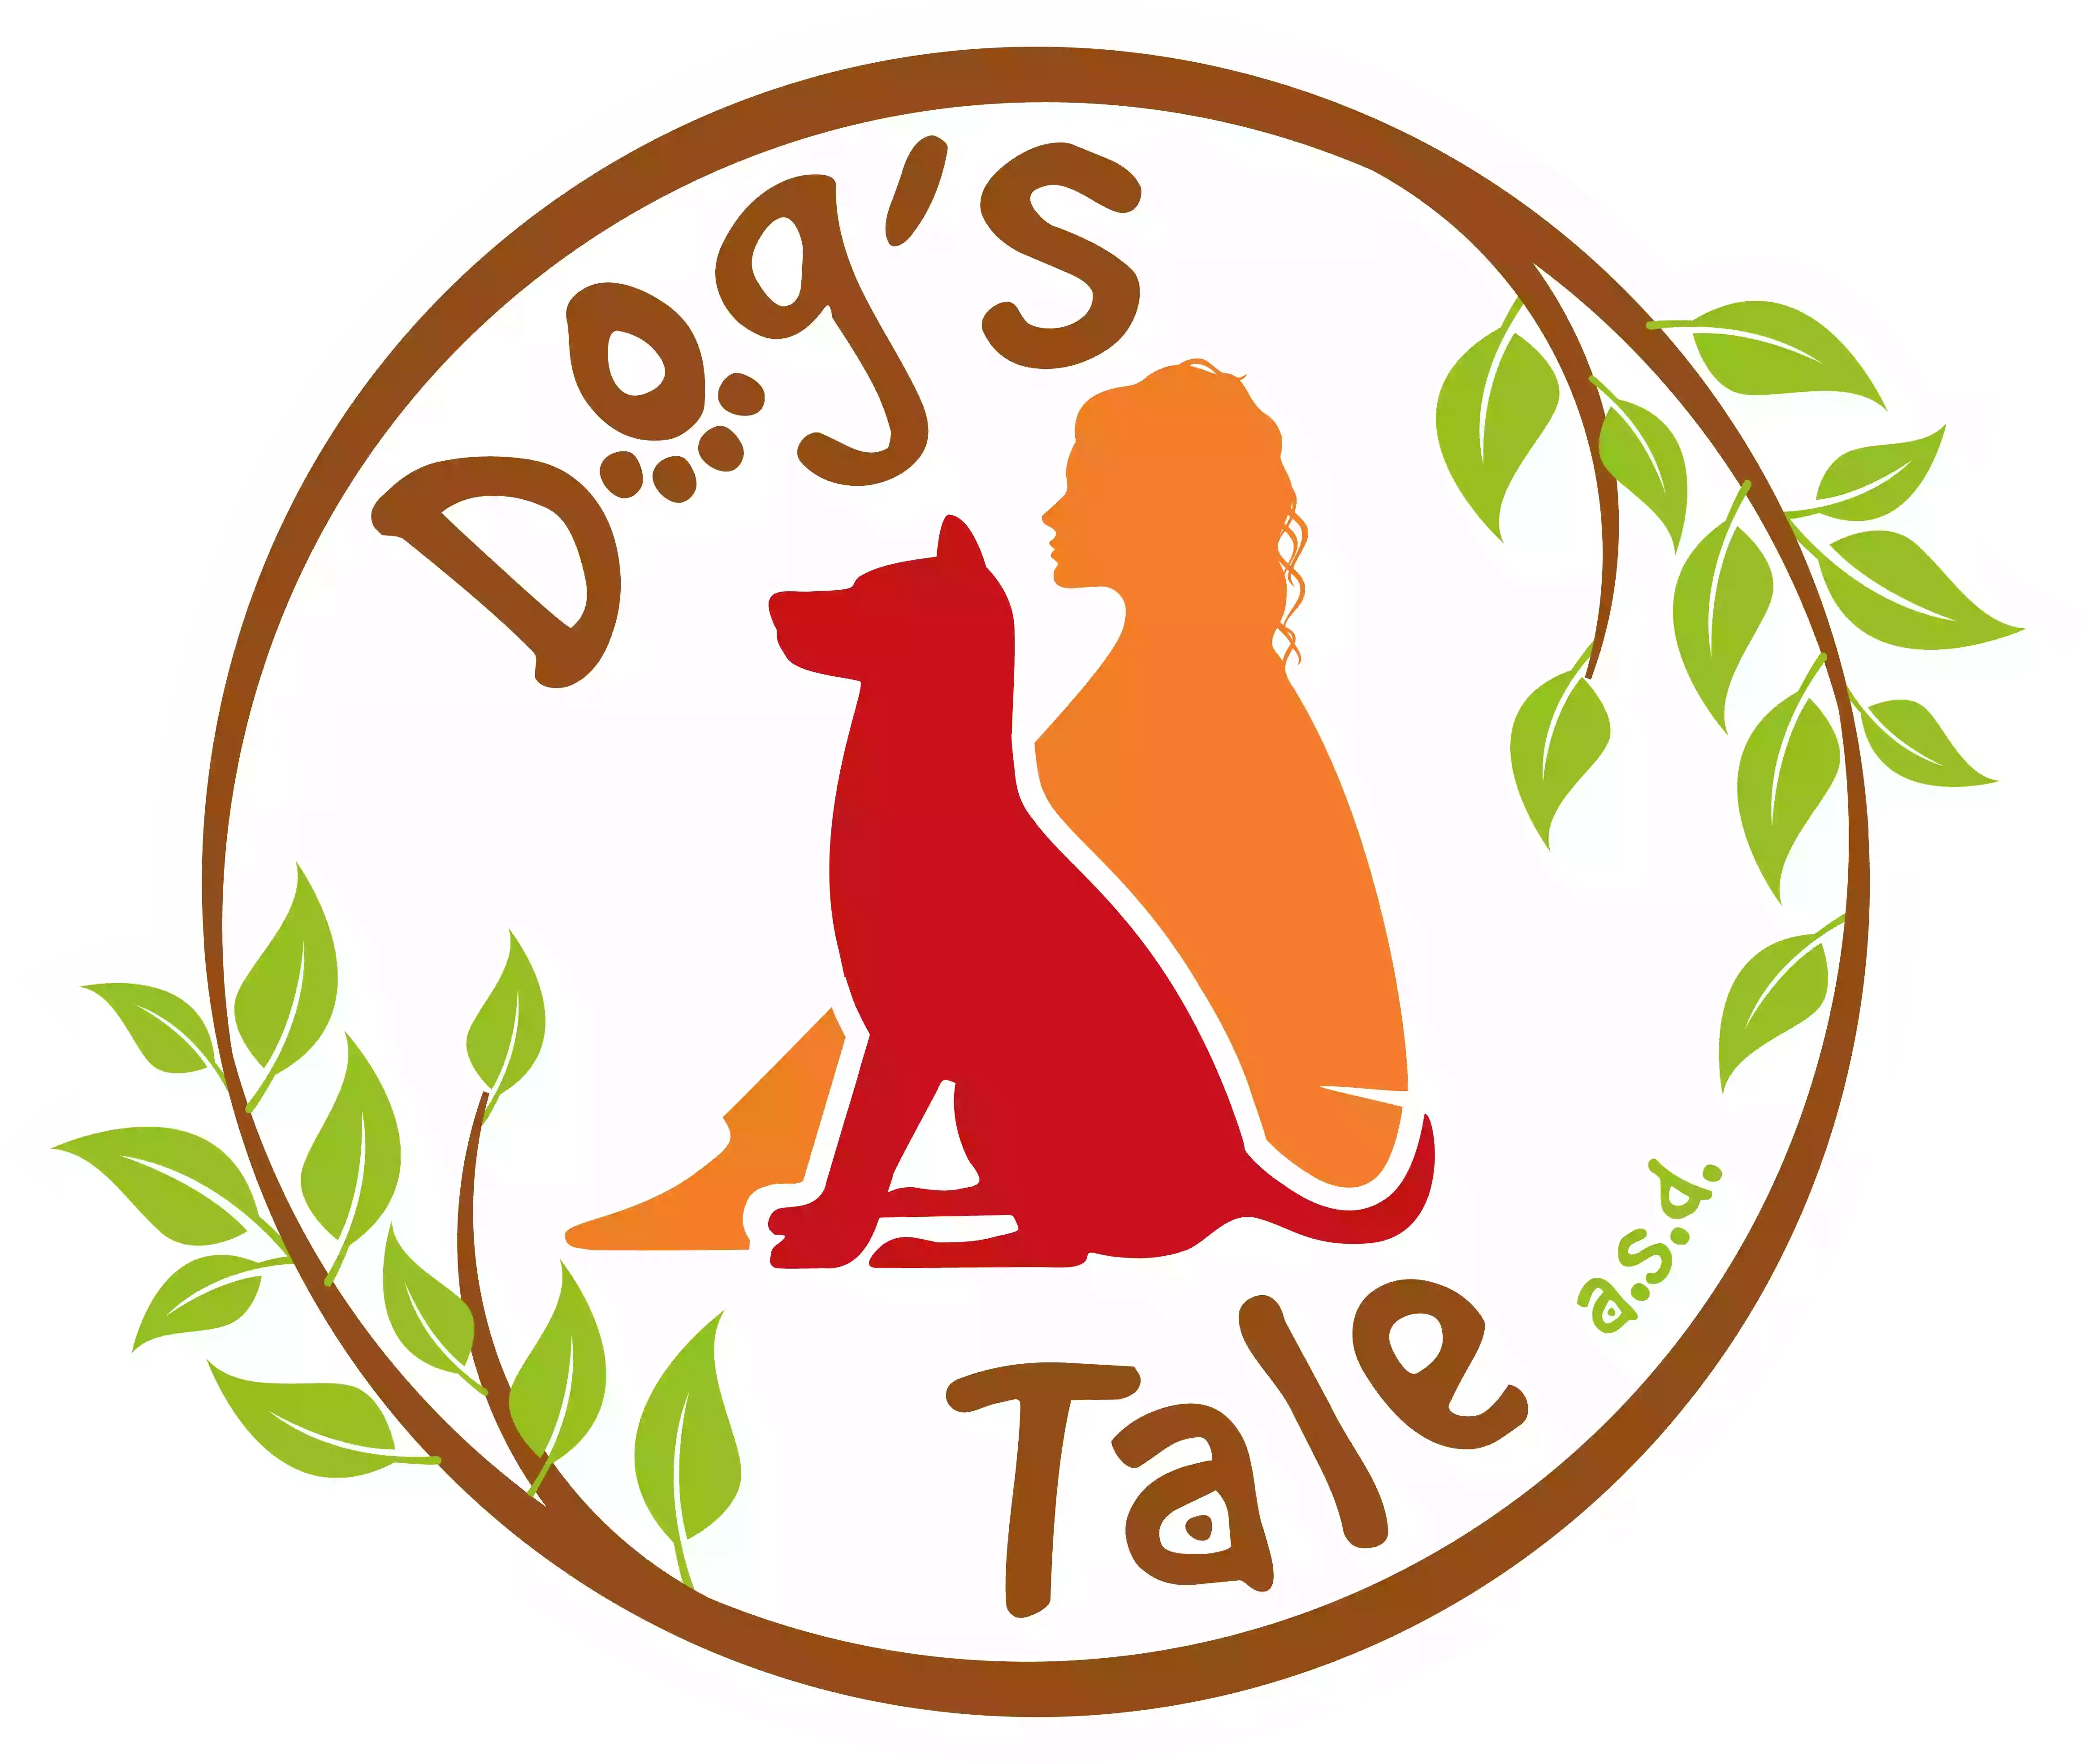 Dog's tale ASD